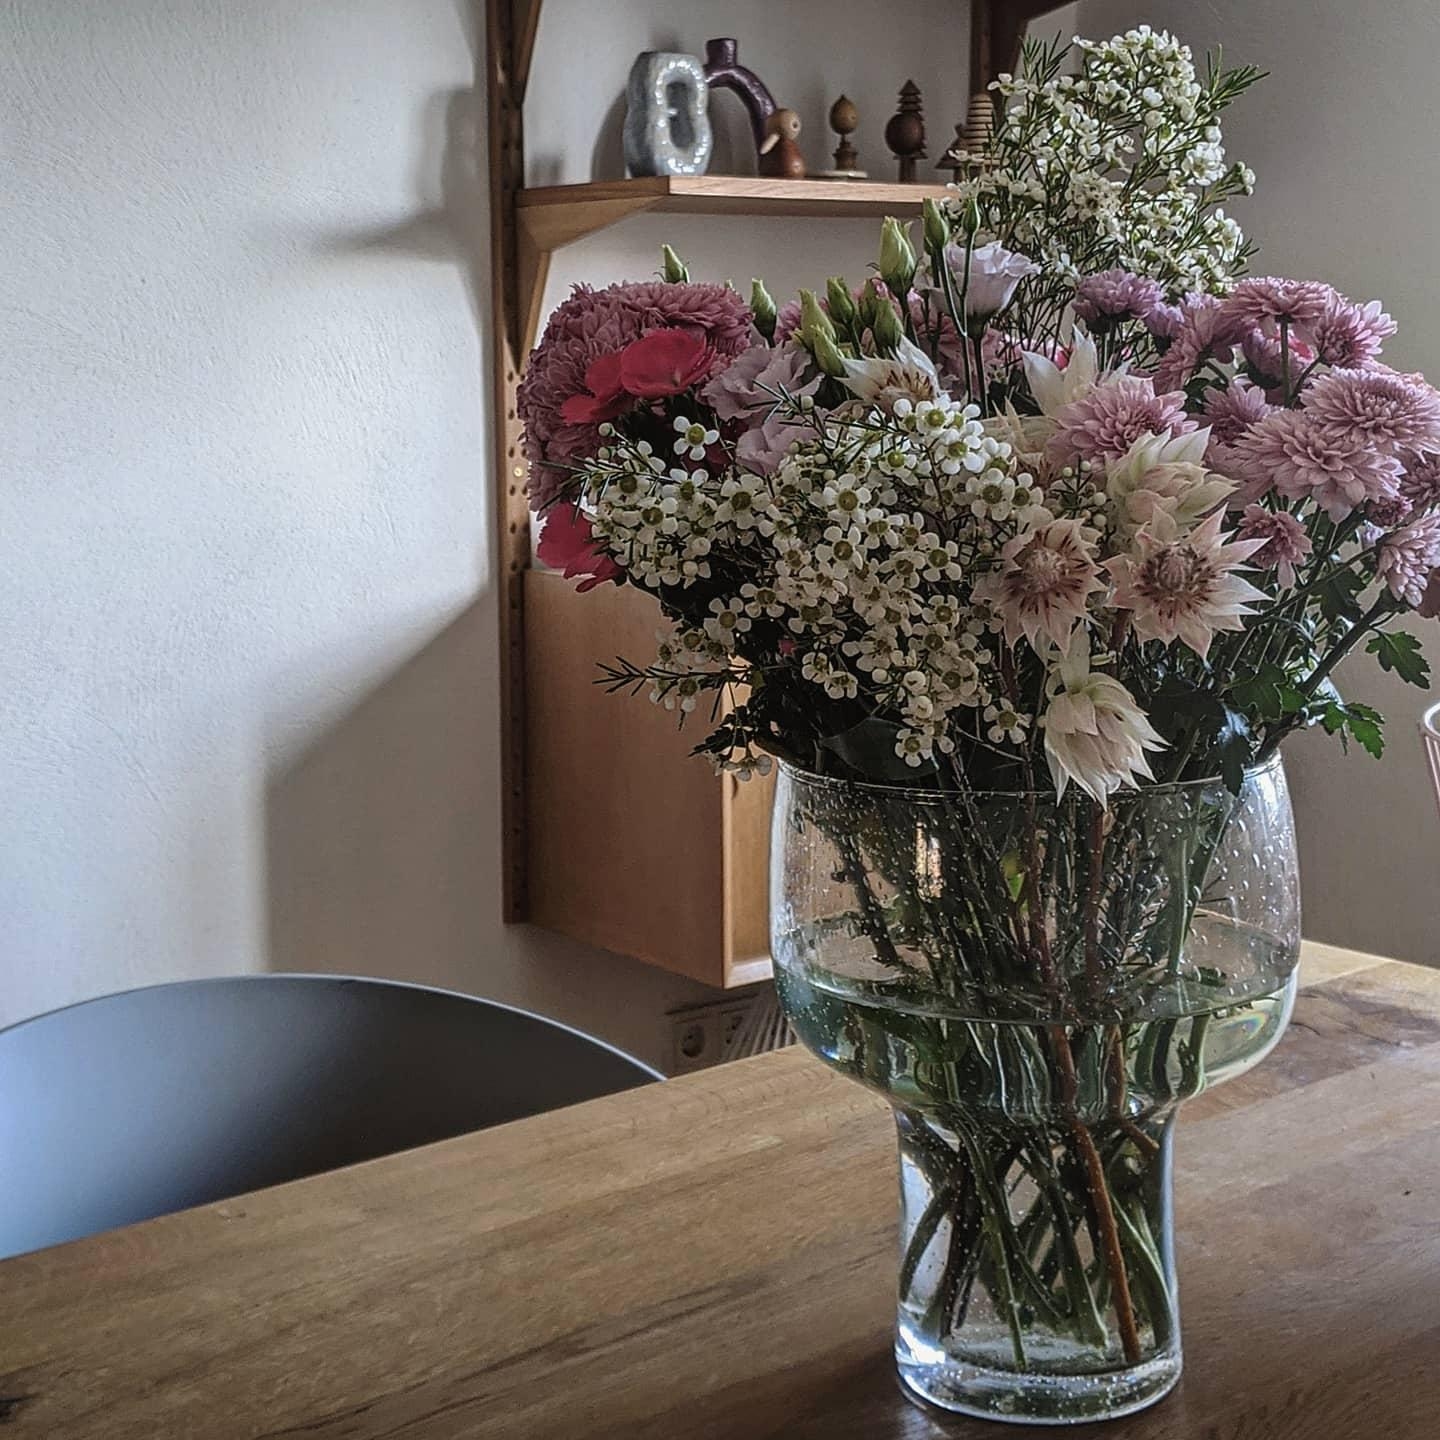 #blumenliebe#blumen#flowers#freshflowers#freshflowerfriday#home#esstisch#decoration#interior#interiør#homestory#couchsty